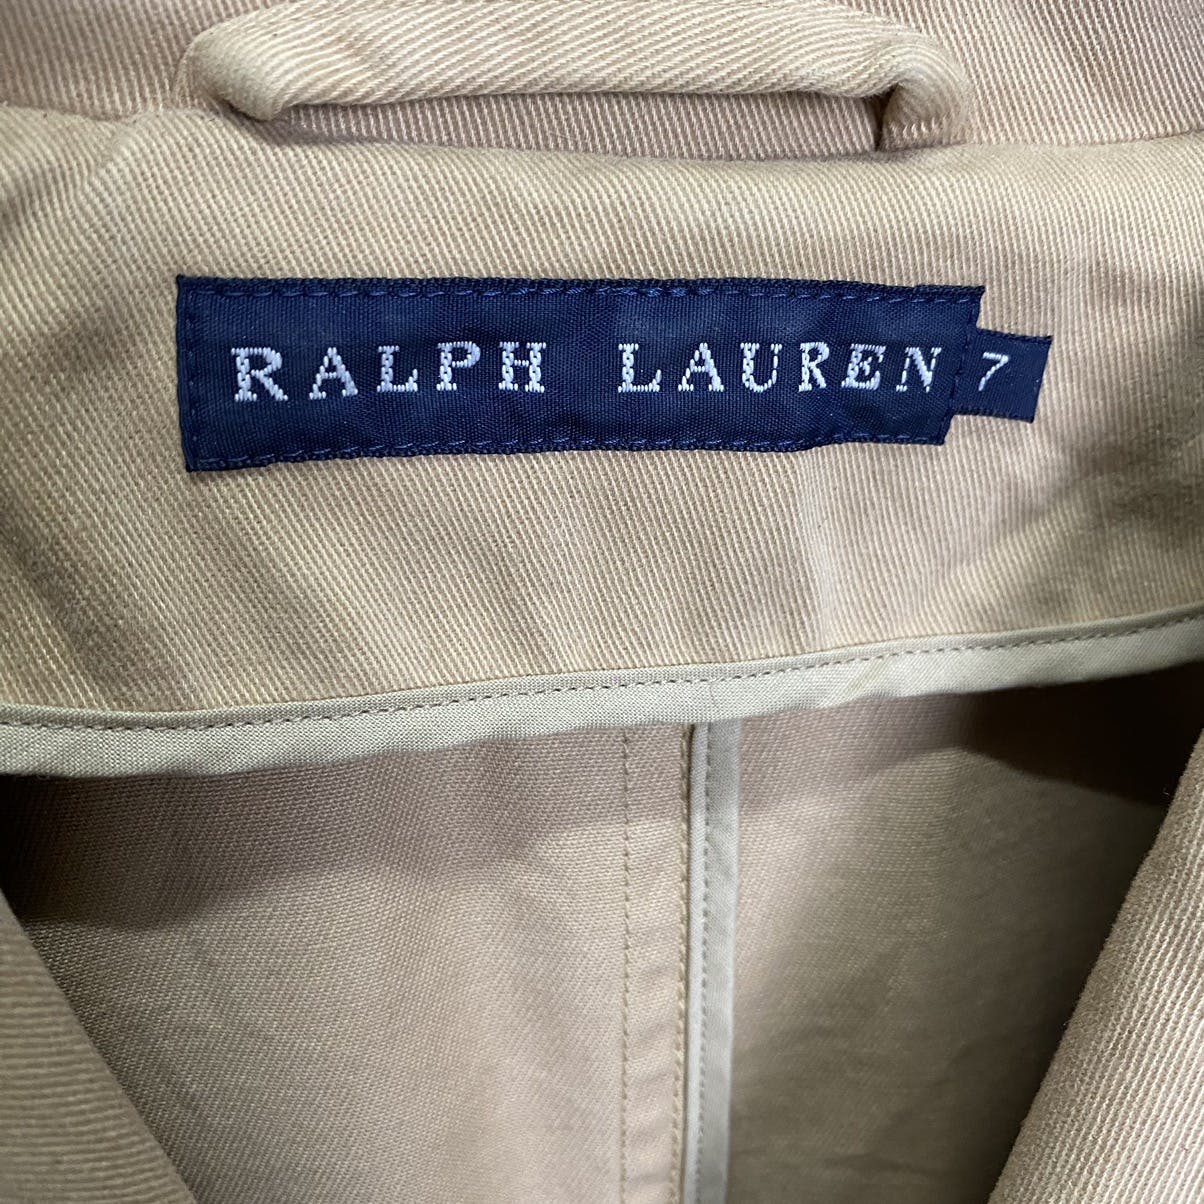 Ralph Lauren 4 pocket jacket - 8